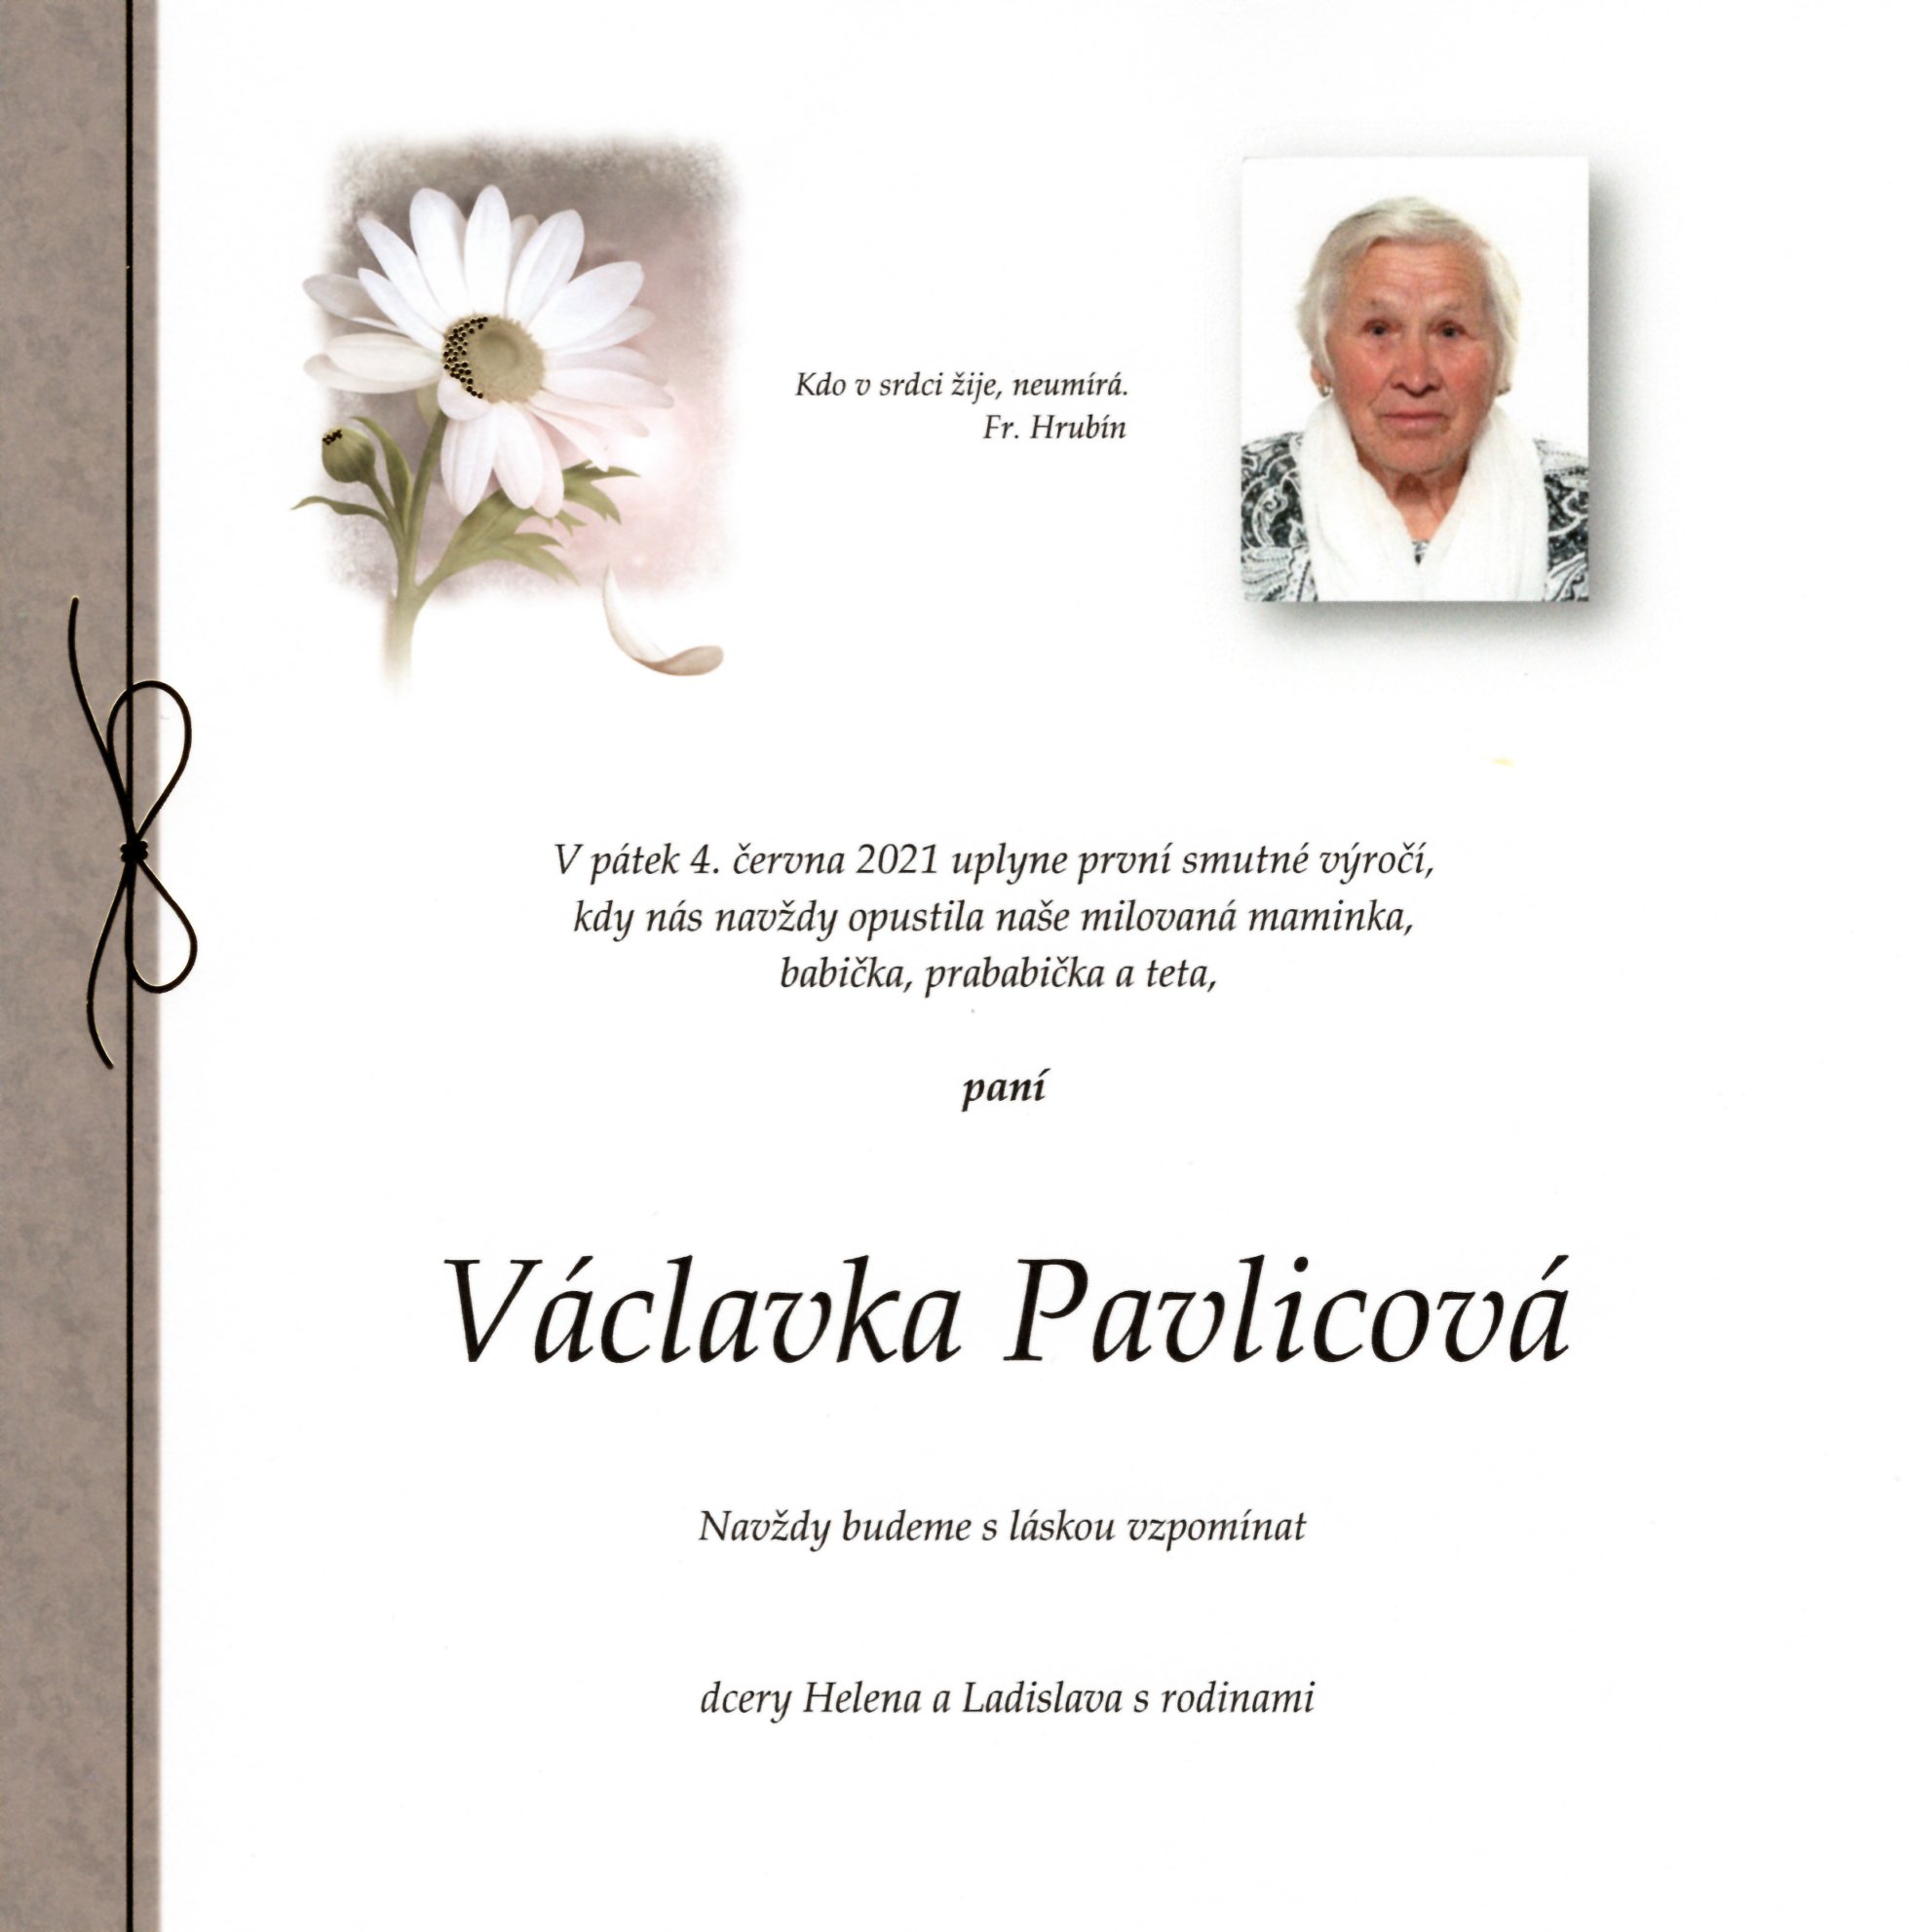 Václavka Pavlicová